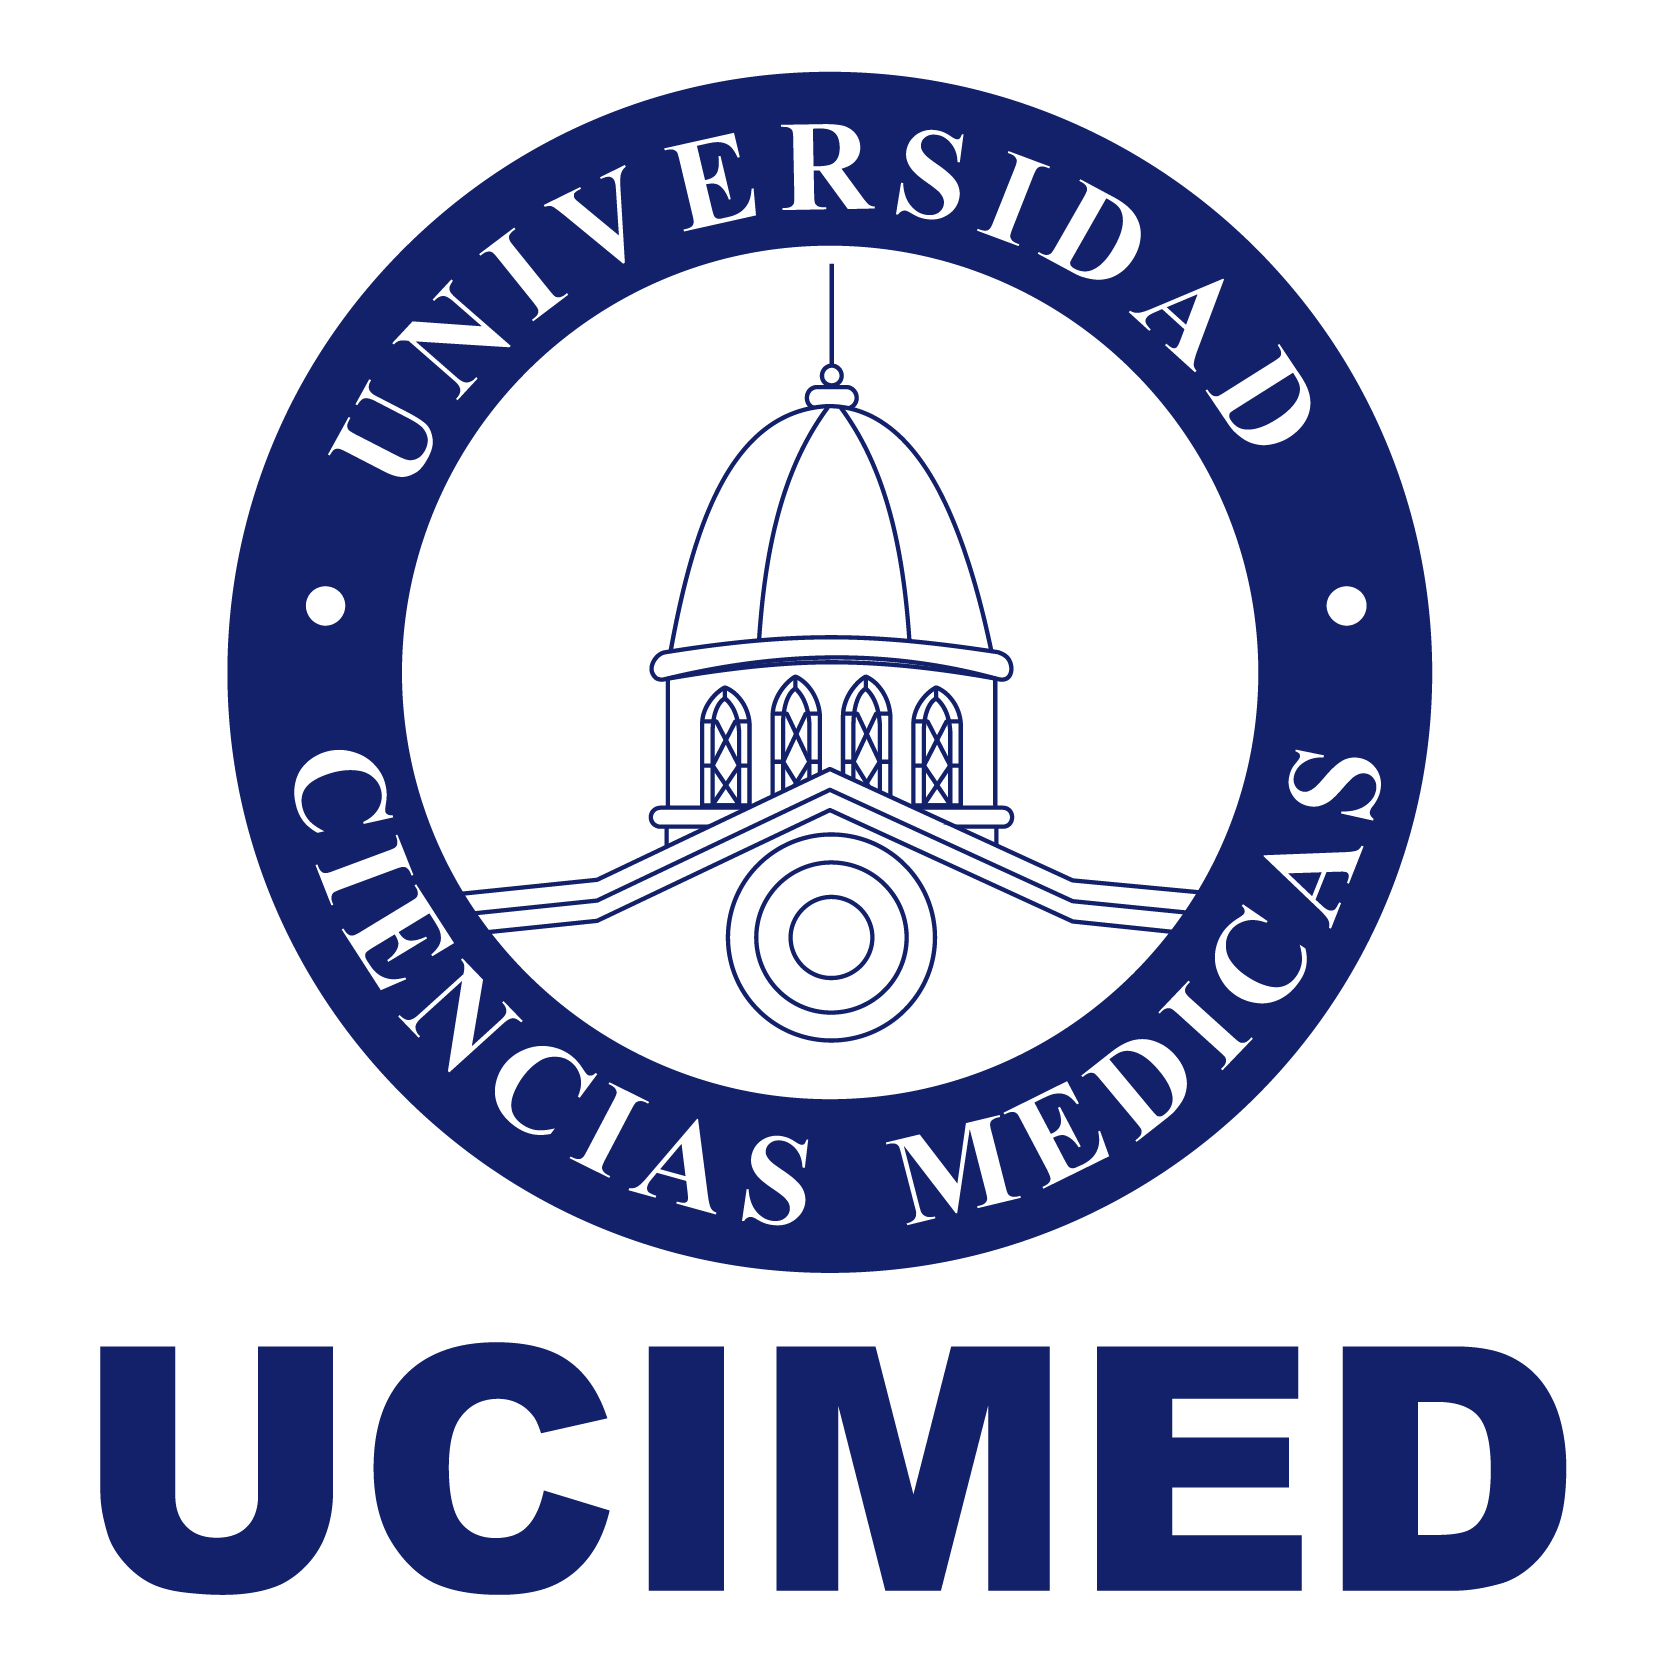 UCIMED logo-03